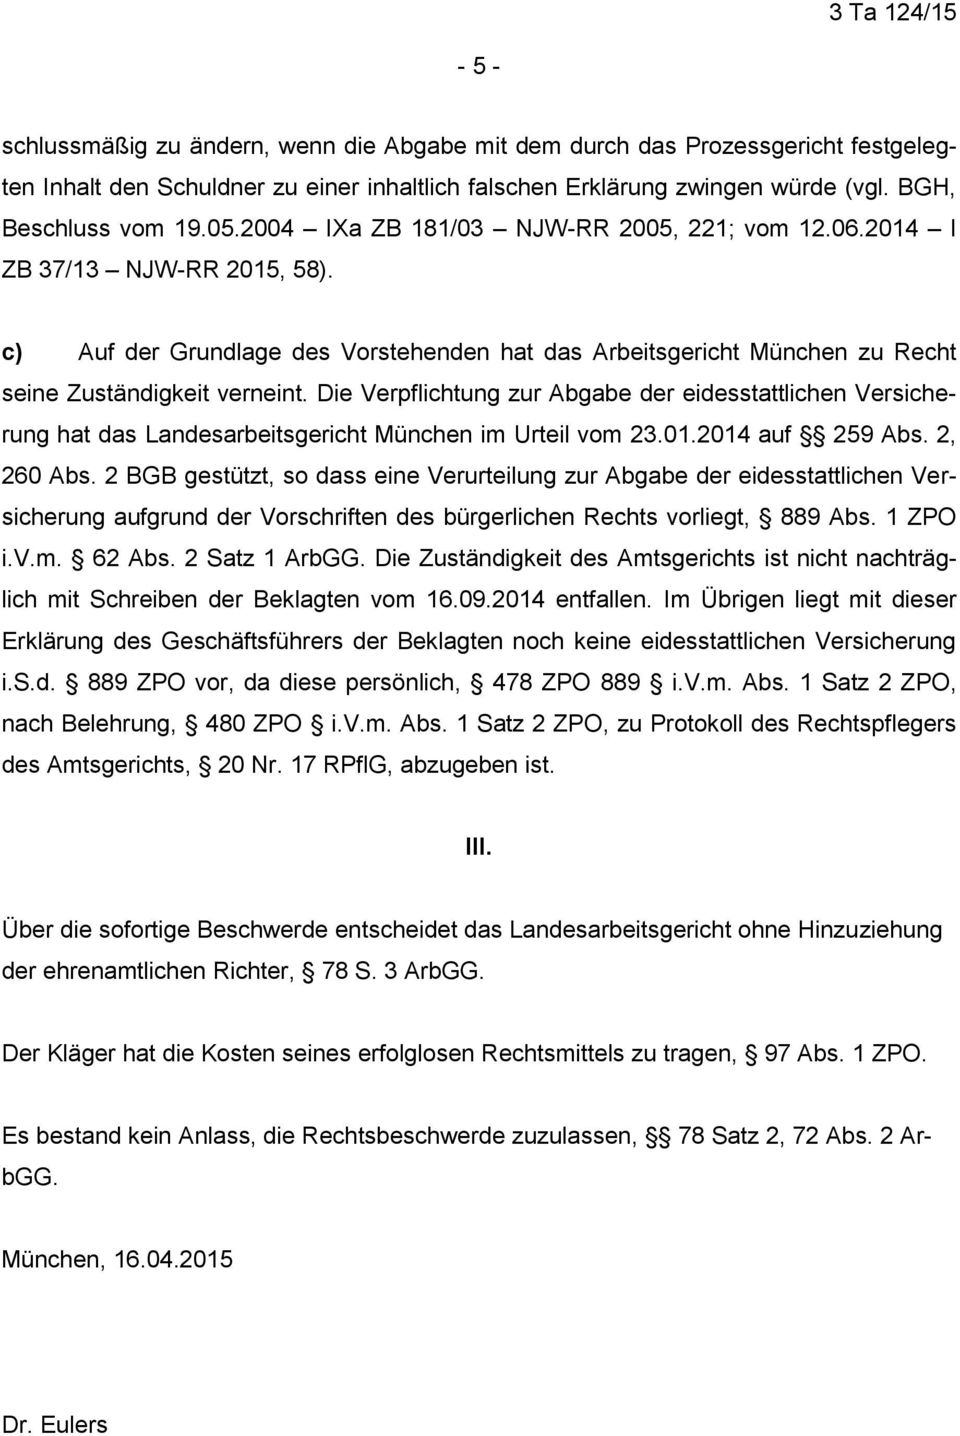 Die Verpflichtung zur Abgabe der eidesstattlichen Versicherung hat das Landesarbeitsgericht München im Urteil vom 23.01.2014 auf 259 Abs. 2, 260 Abs.